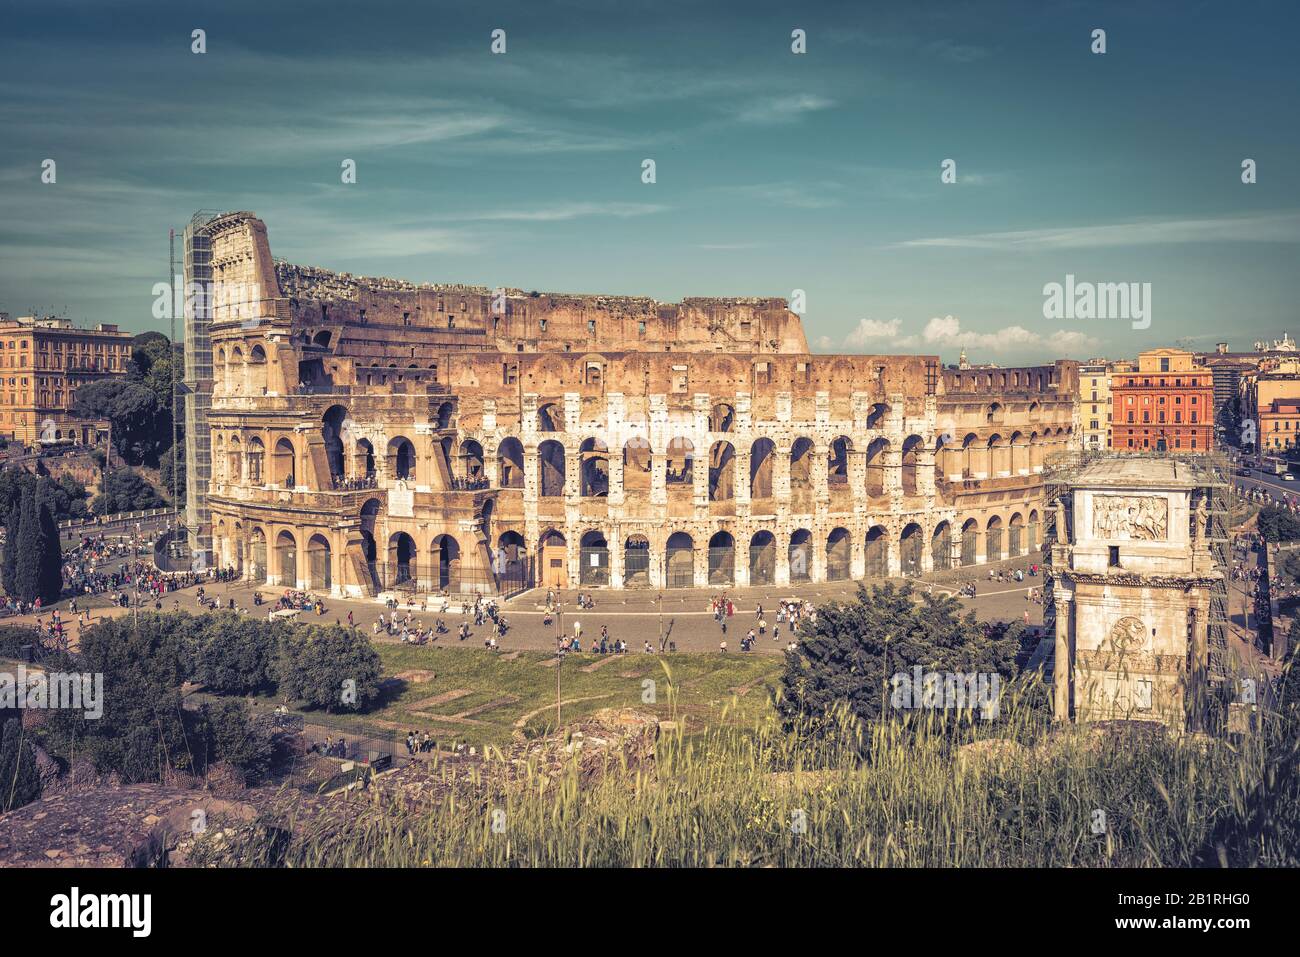 Vue panoramique sur le Colisée (Colisée) à Rome, Italie. Le Colisée est les principales attractions touristiques de Rome. Il a été construit au 1° siècle. Banque D'Images